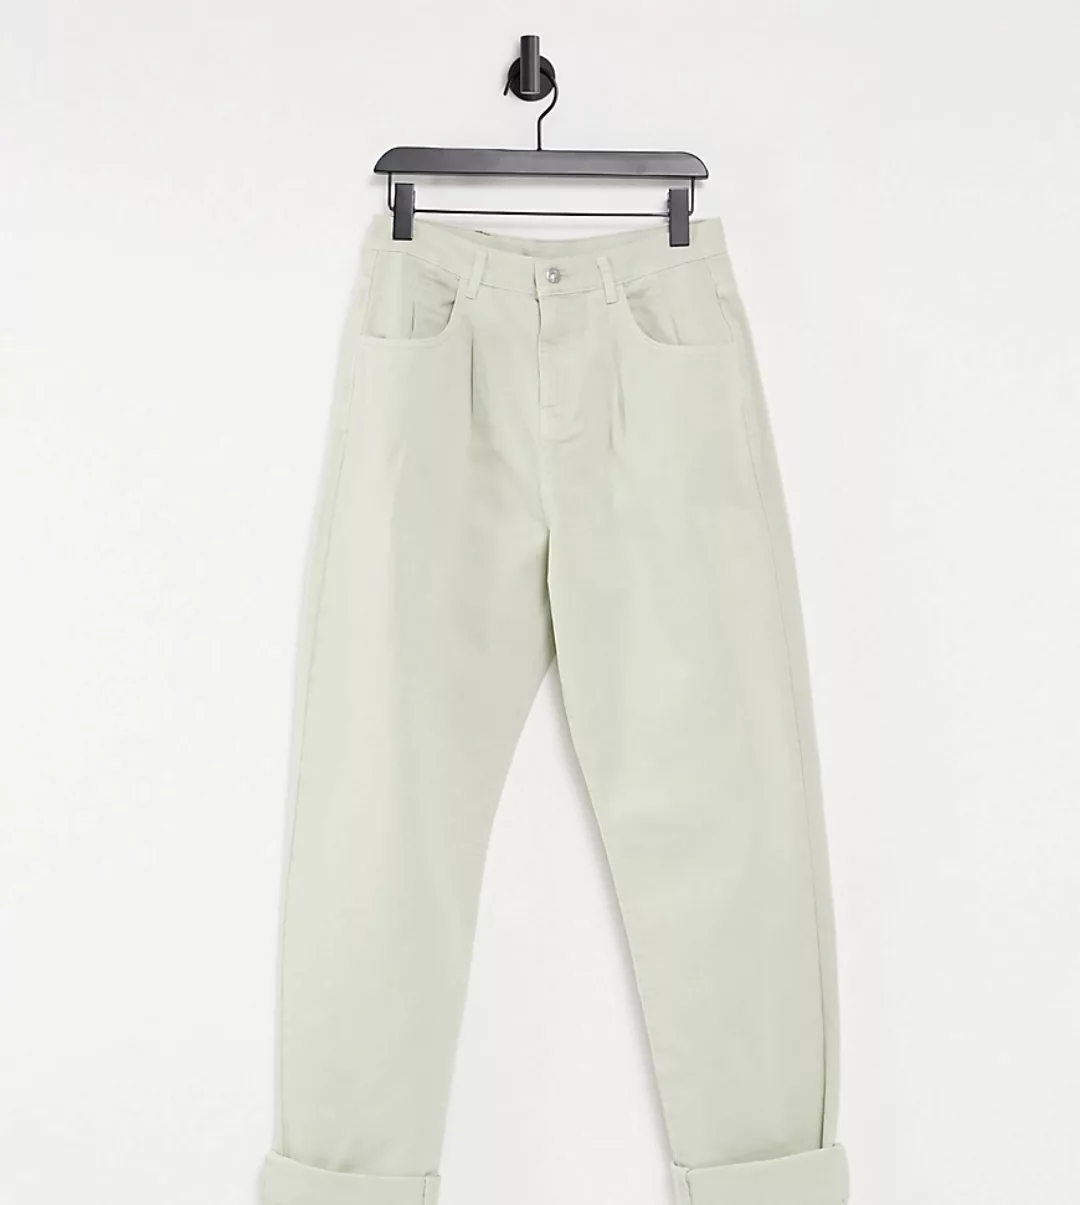 Reclaimed Vintage Inspired – The '83 – Lockere Unisex-Jeans in Stein-Neutra günstig online kaufen